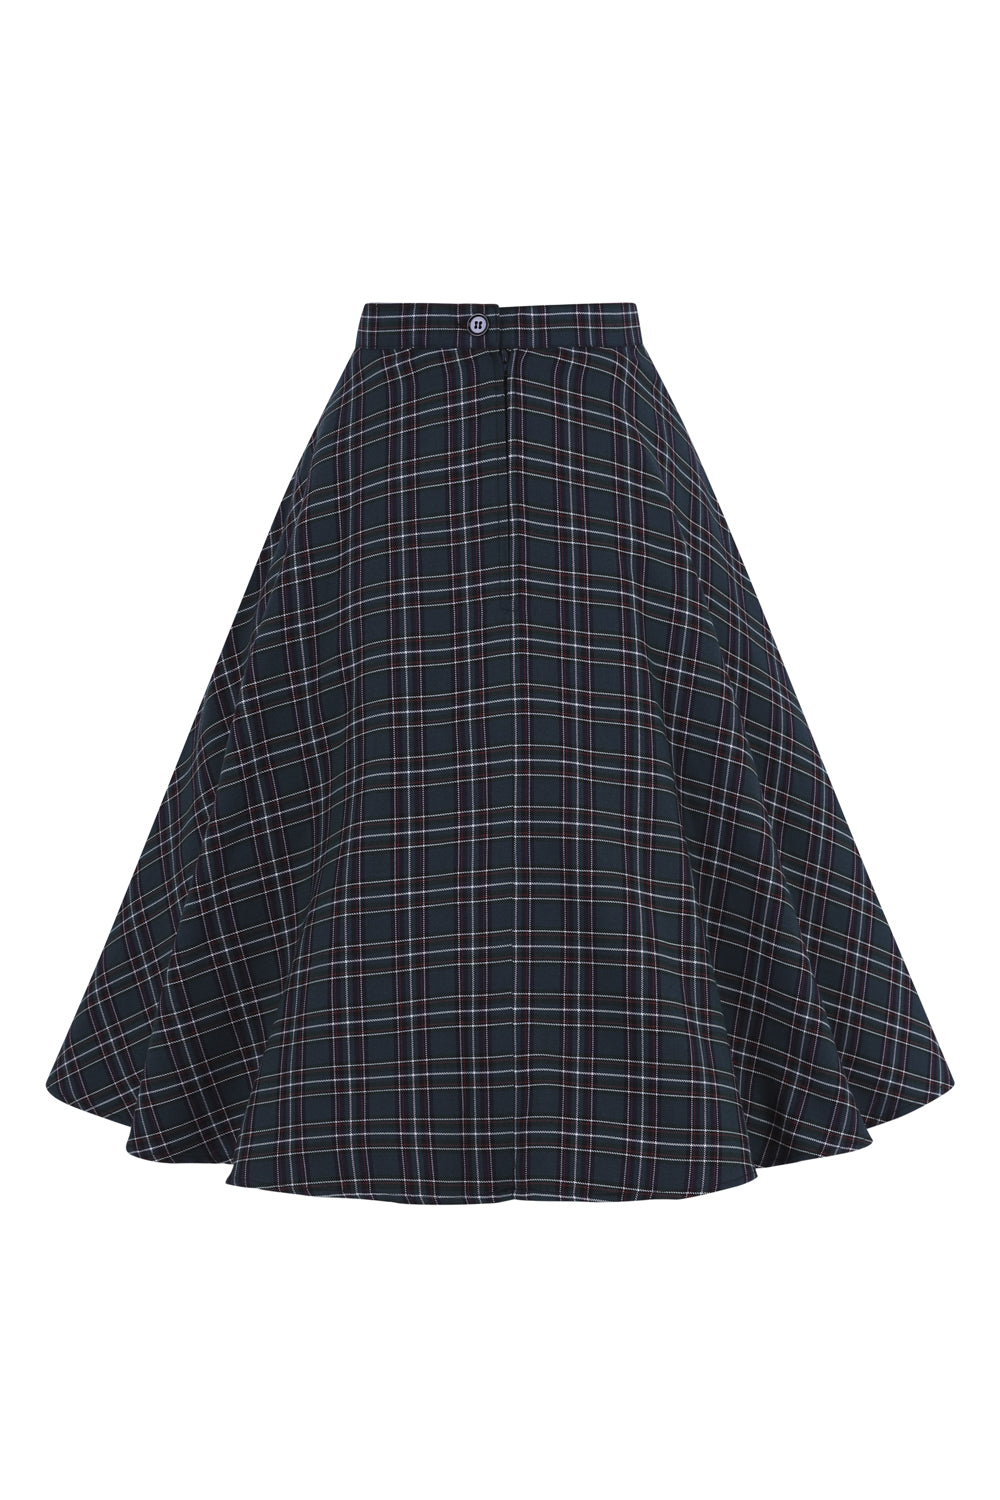 Peebles 50's Skirt